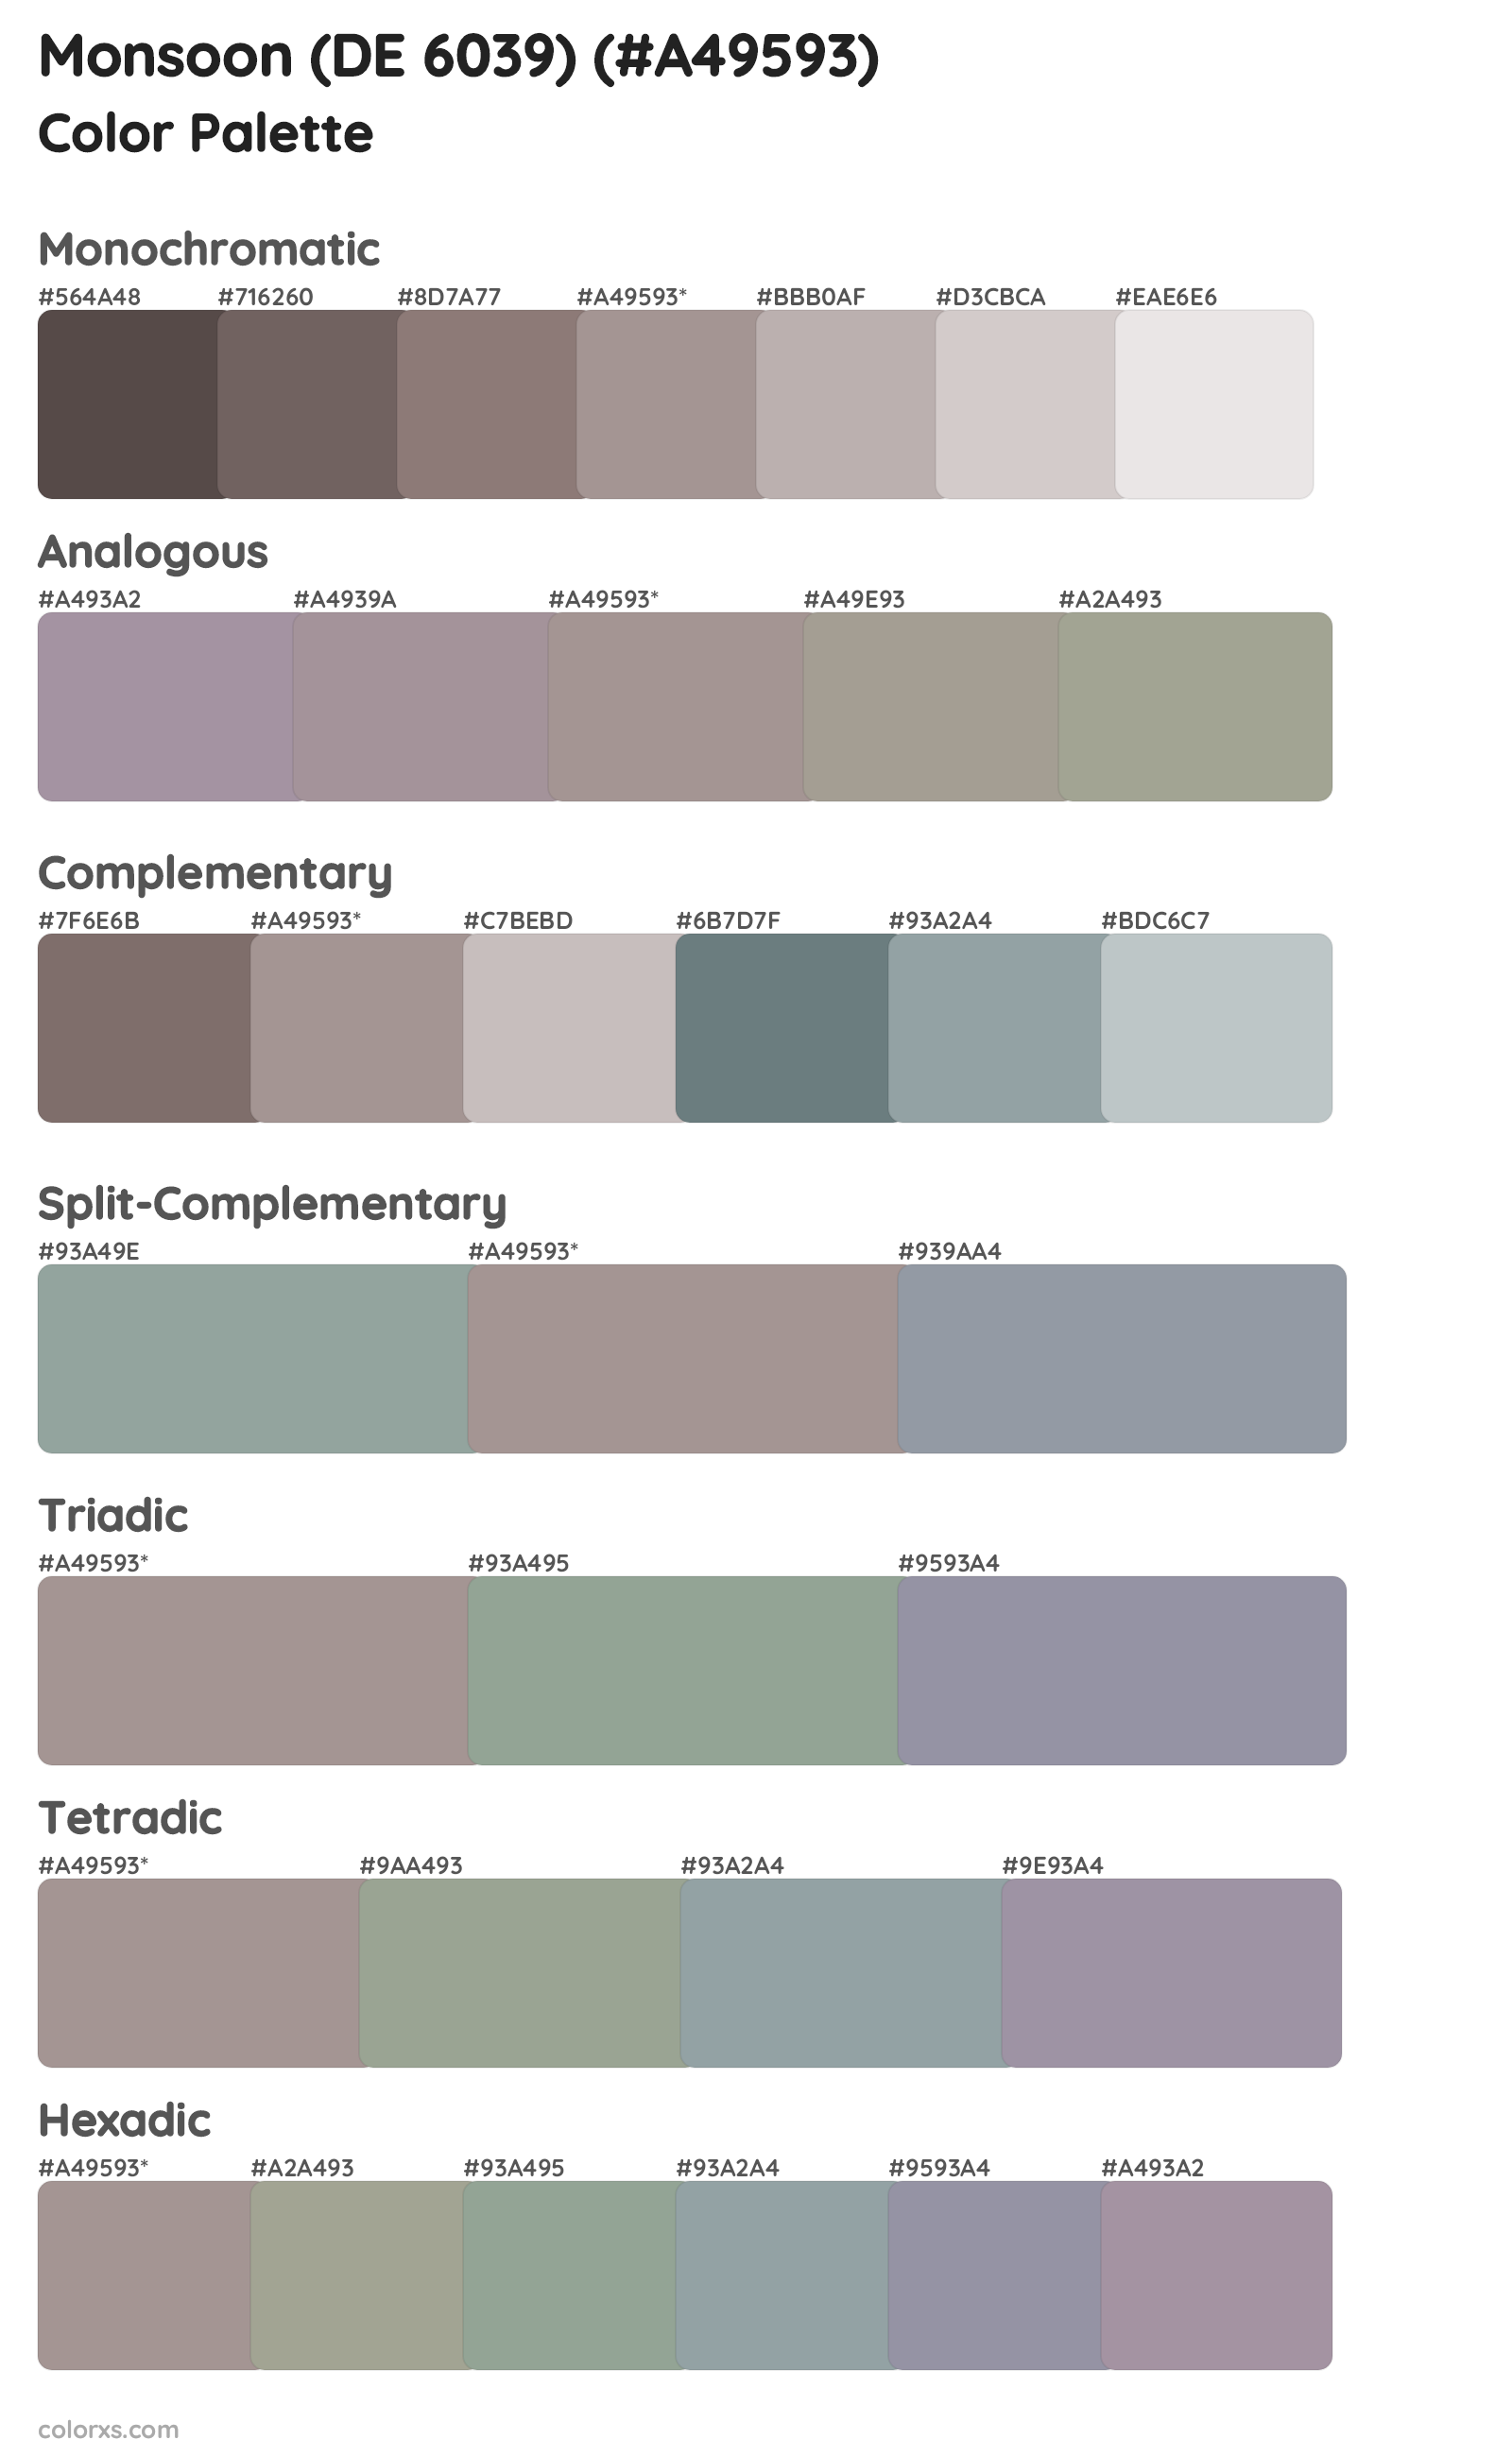 Monsoon (DE 6039) Color Scheme Palettes